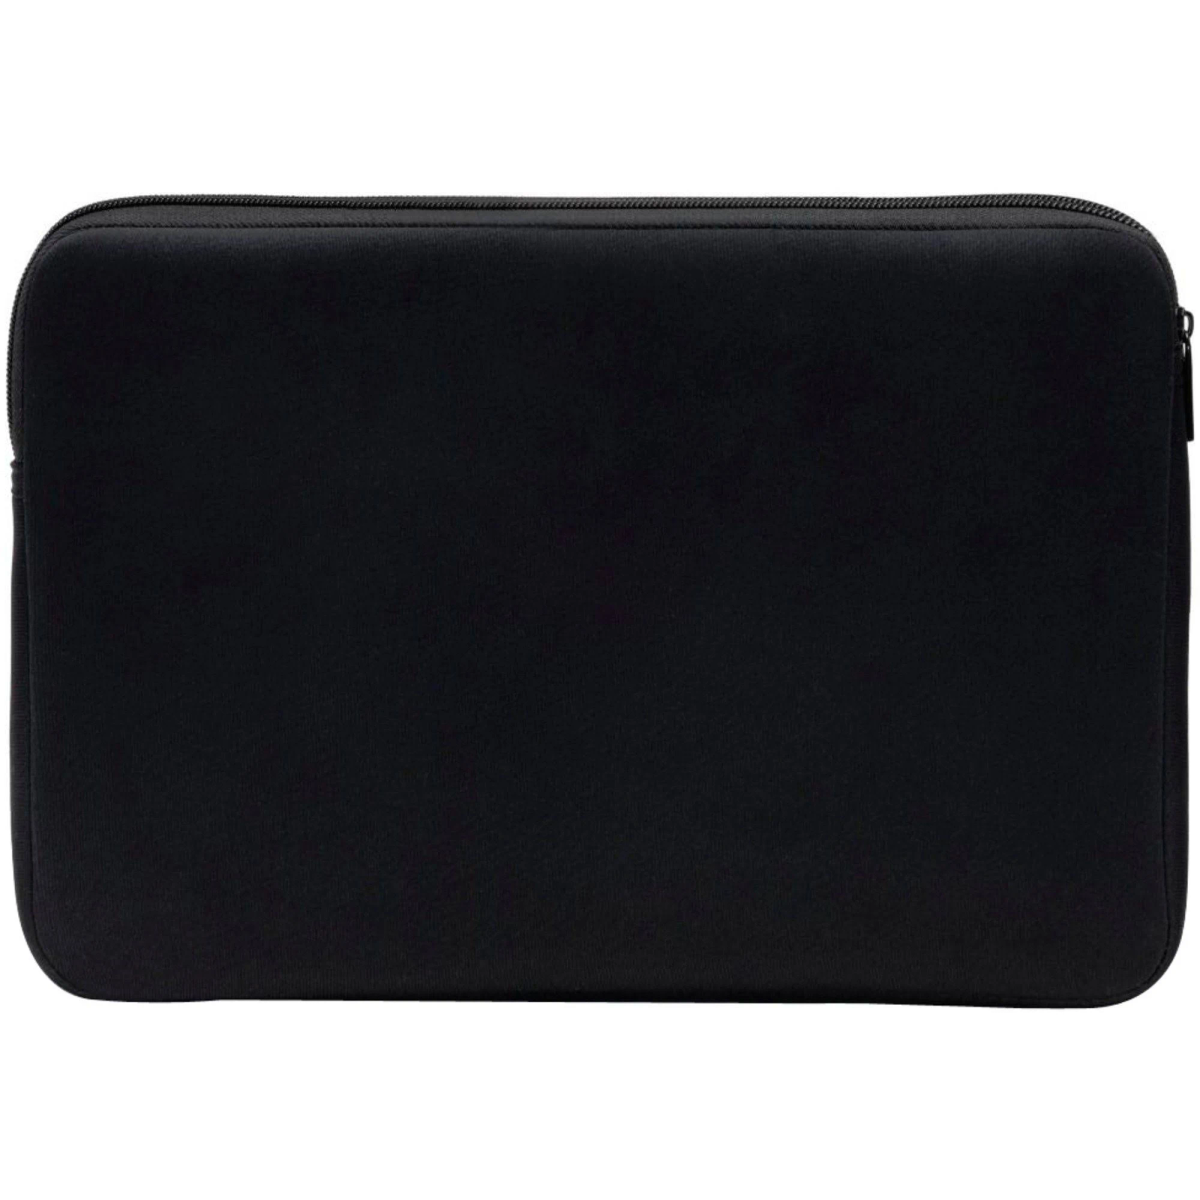 DICOTA D31189 PERFECT SKIN 16-17.3 Schwarz Sleeve Notebooktasche für Neopren, BLACK Universal